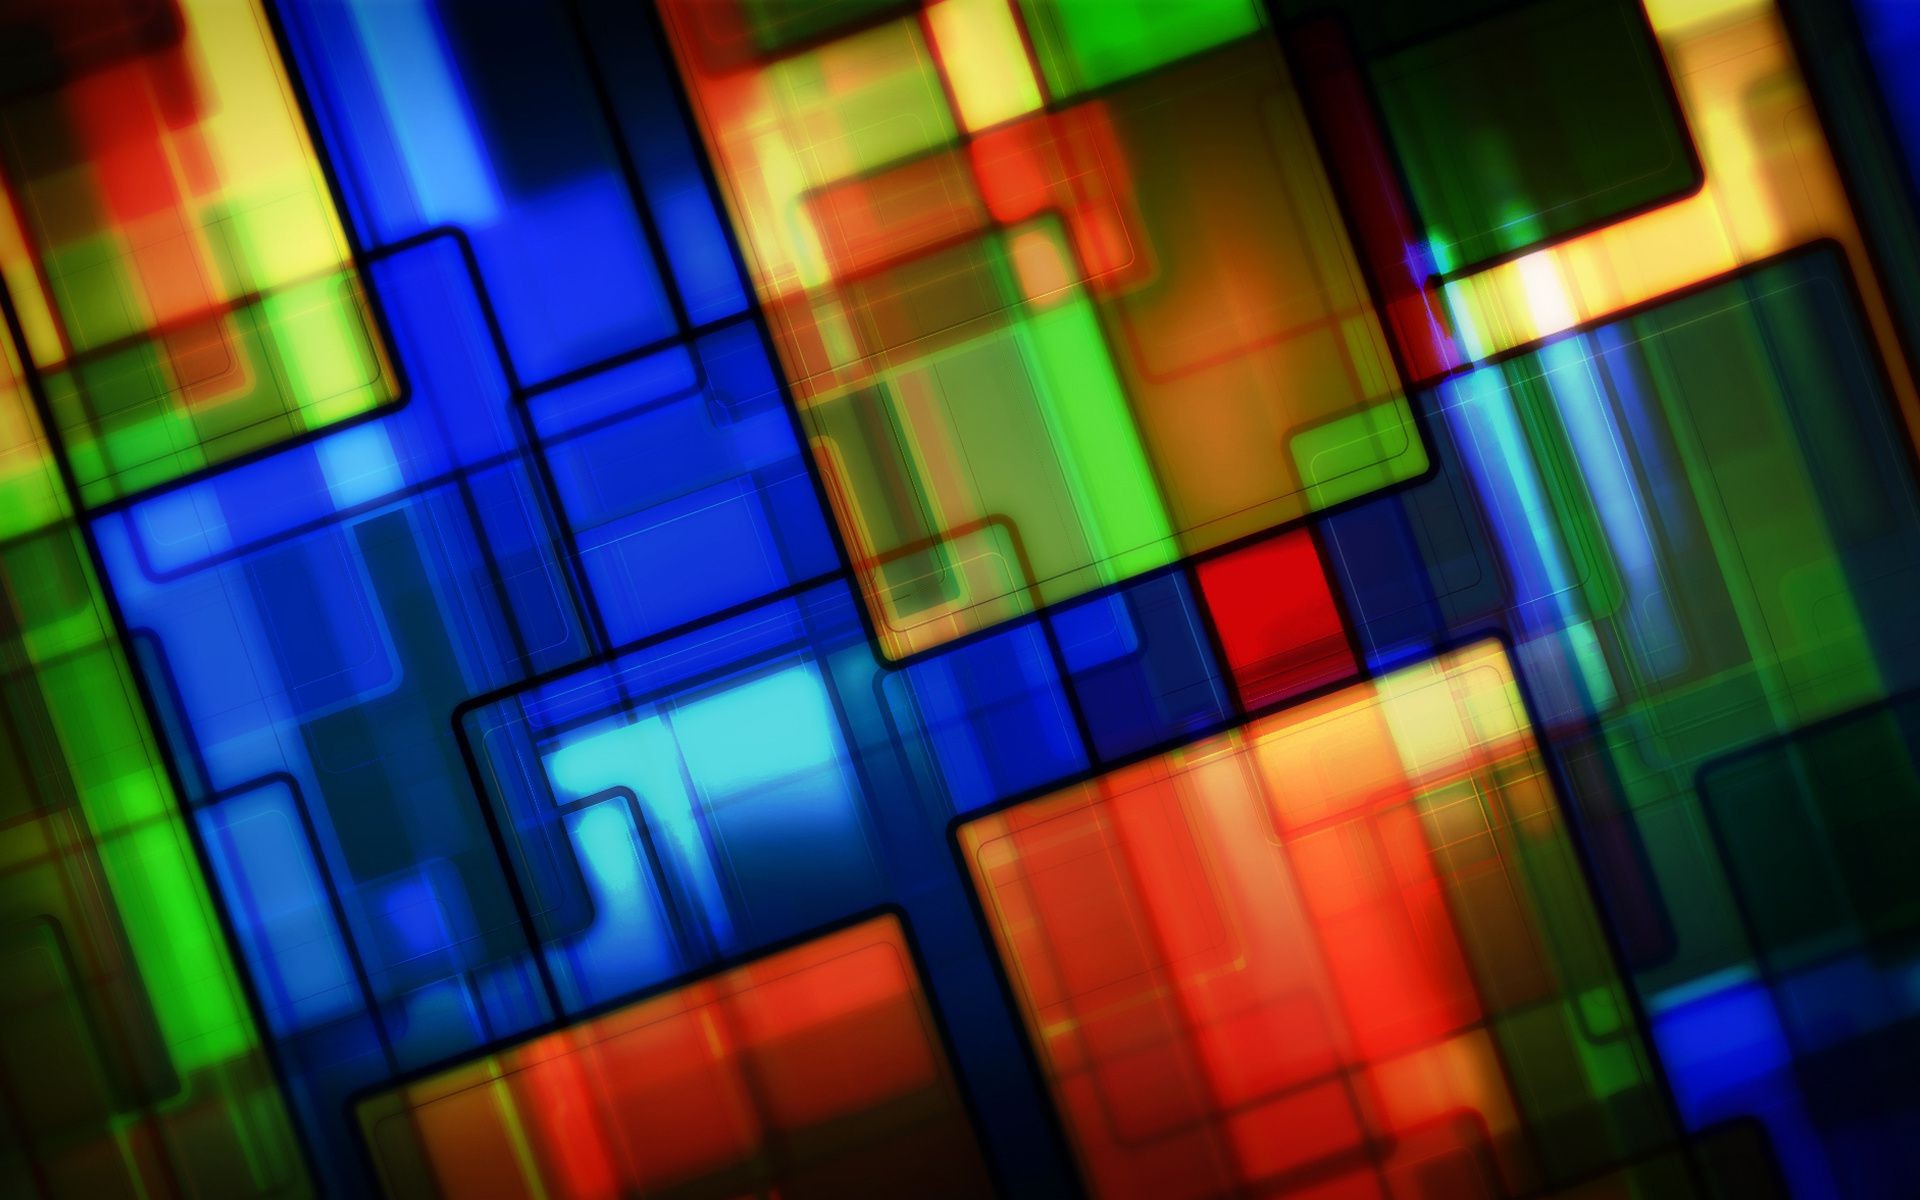 геометрические фигуры аннотация цвет искусство дизайн яркий пестрый график текстура радуга размытость футуристический формы современные шаблон обои художественный иллюстрация рабочего стола свет фон